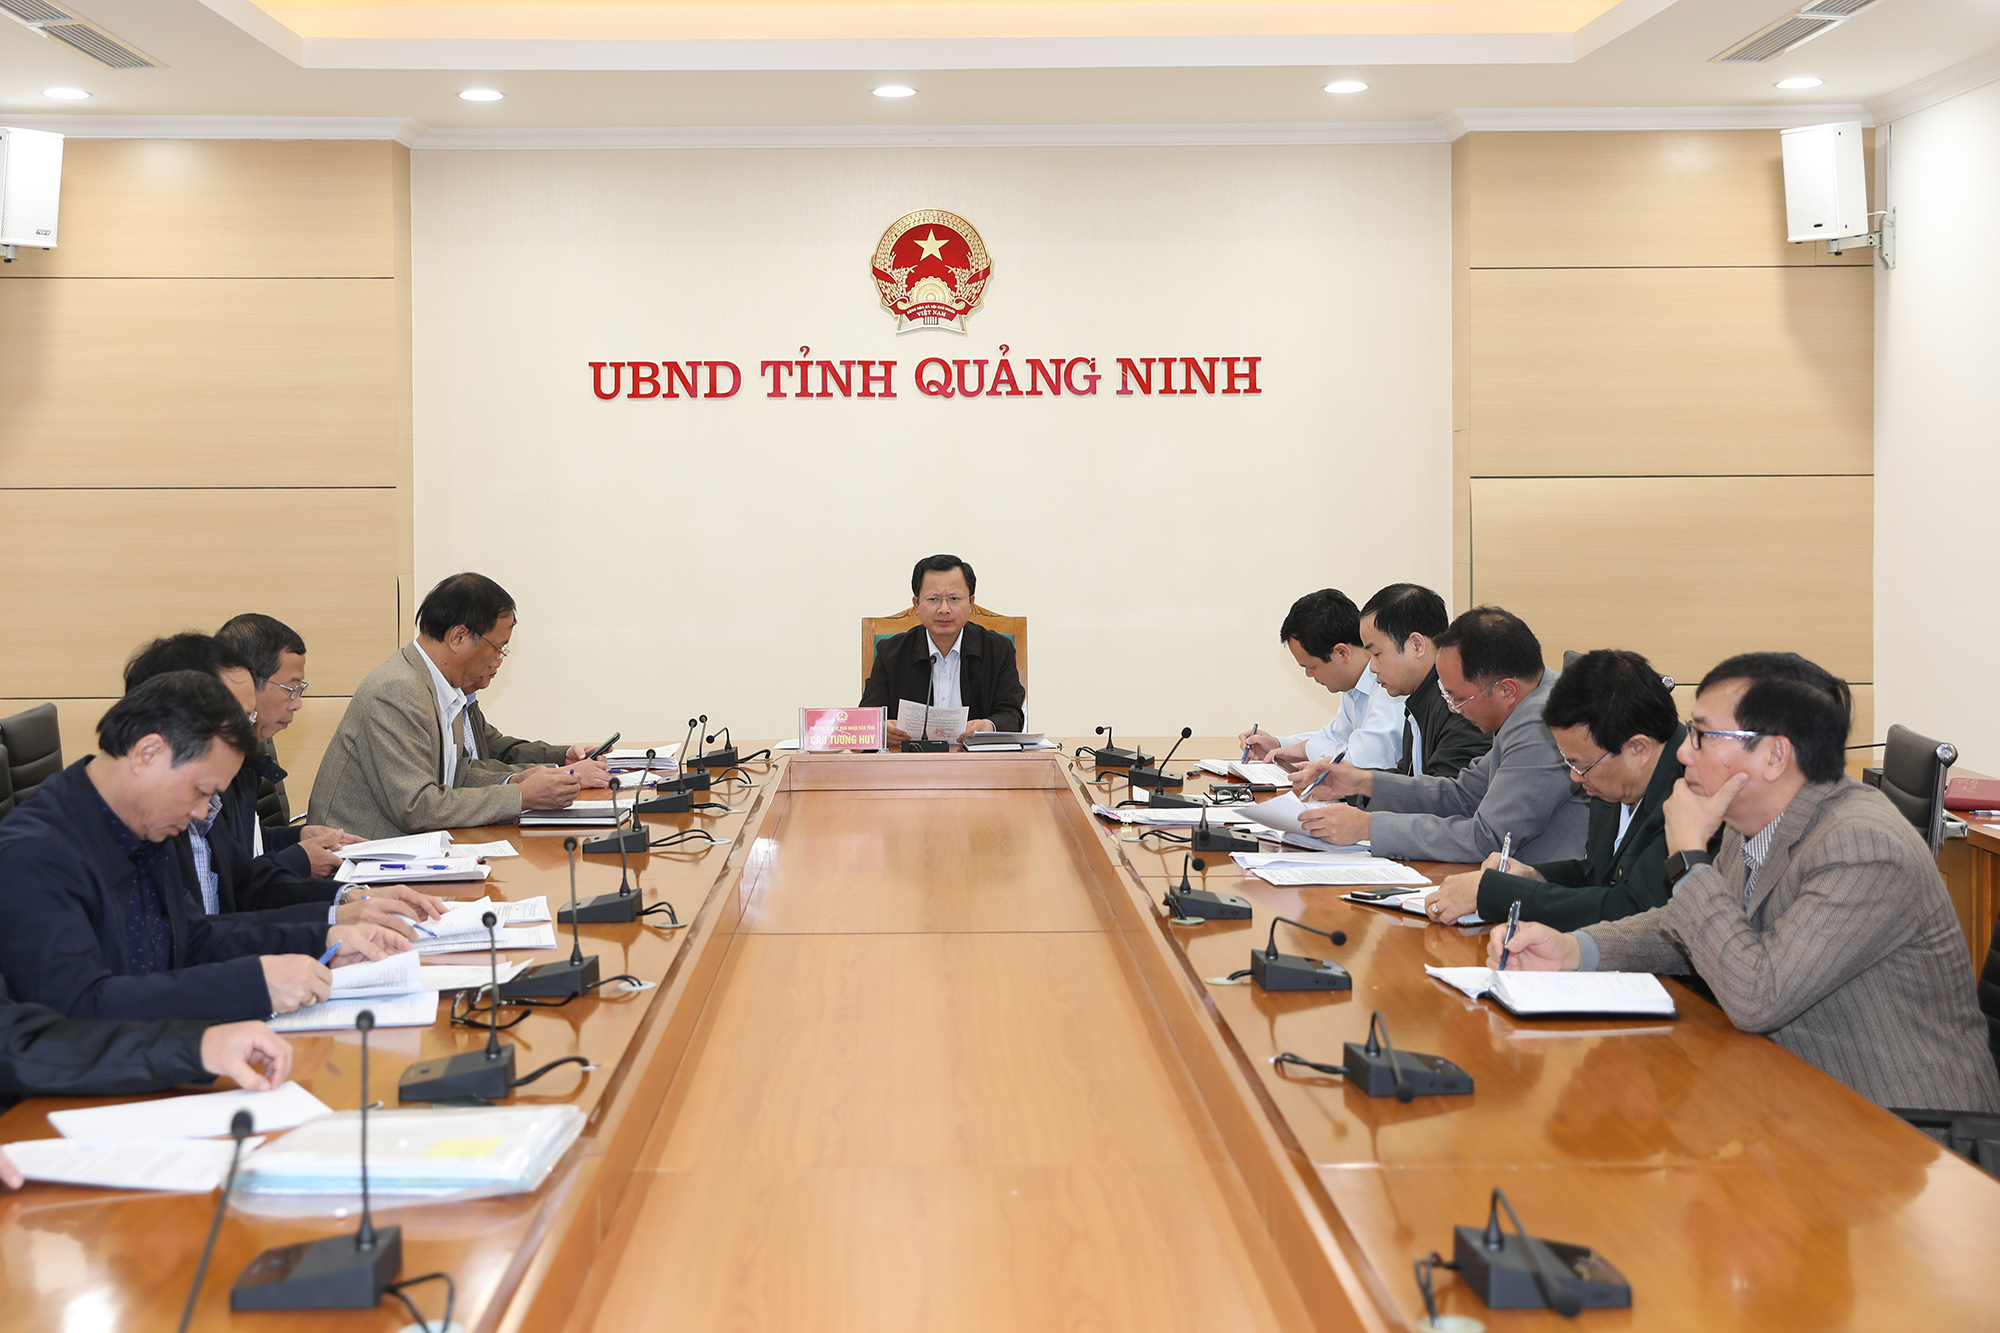 Đồng chí Cao Tường Huy, Phó Chủ tịch UBND tỉnh, chủ trì cuộc họp.